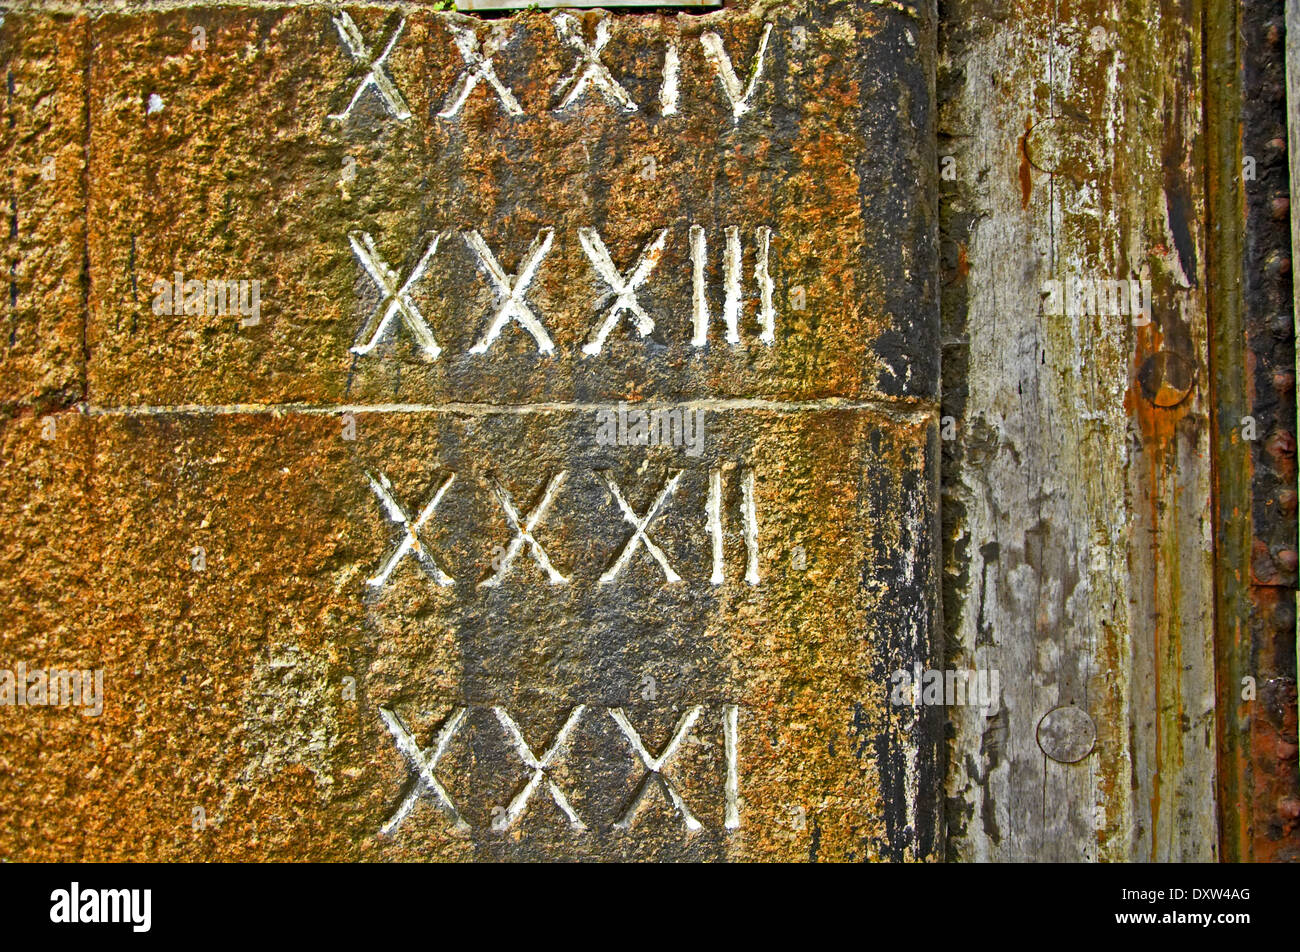 Numeri romani scolpiti nella pietra del vecchio dock pareti ha dato profondità dei dettagli dell'acqua. Foto Stock